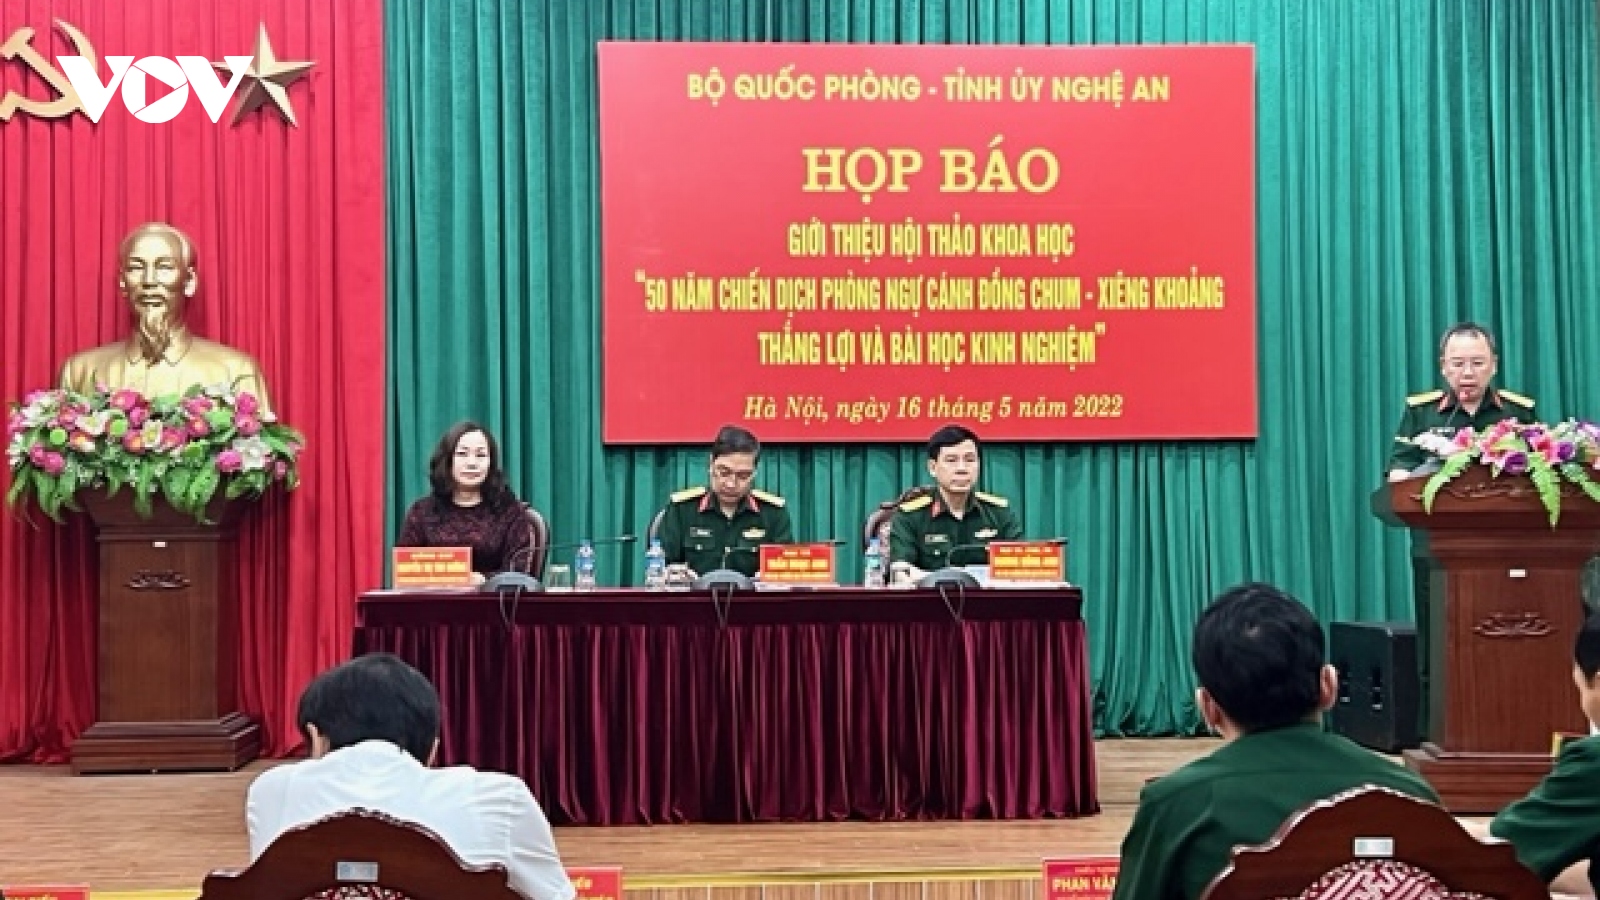 Hội thảo "50 năm chiến dịch phòng ngự Cánh Đồng Chum - Xiêng Khoảng" tổ chức tại Nghệ An